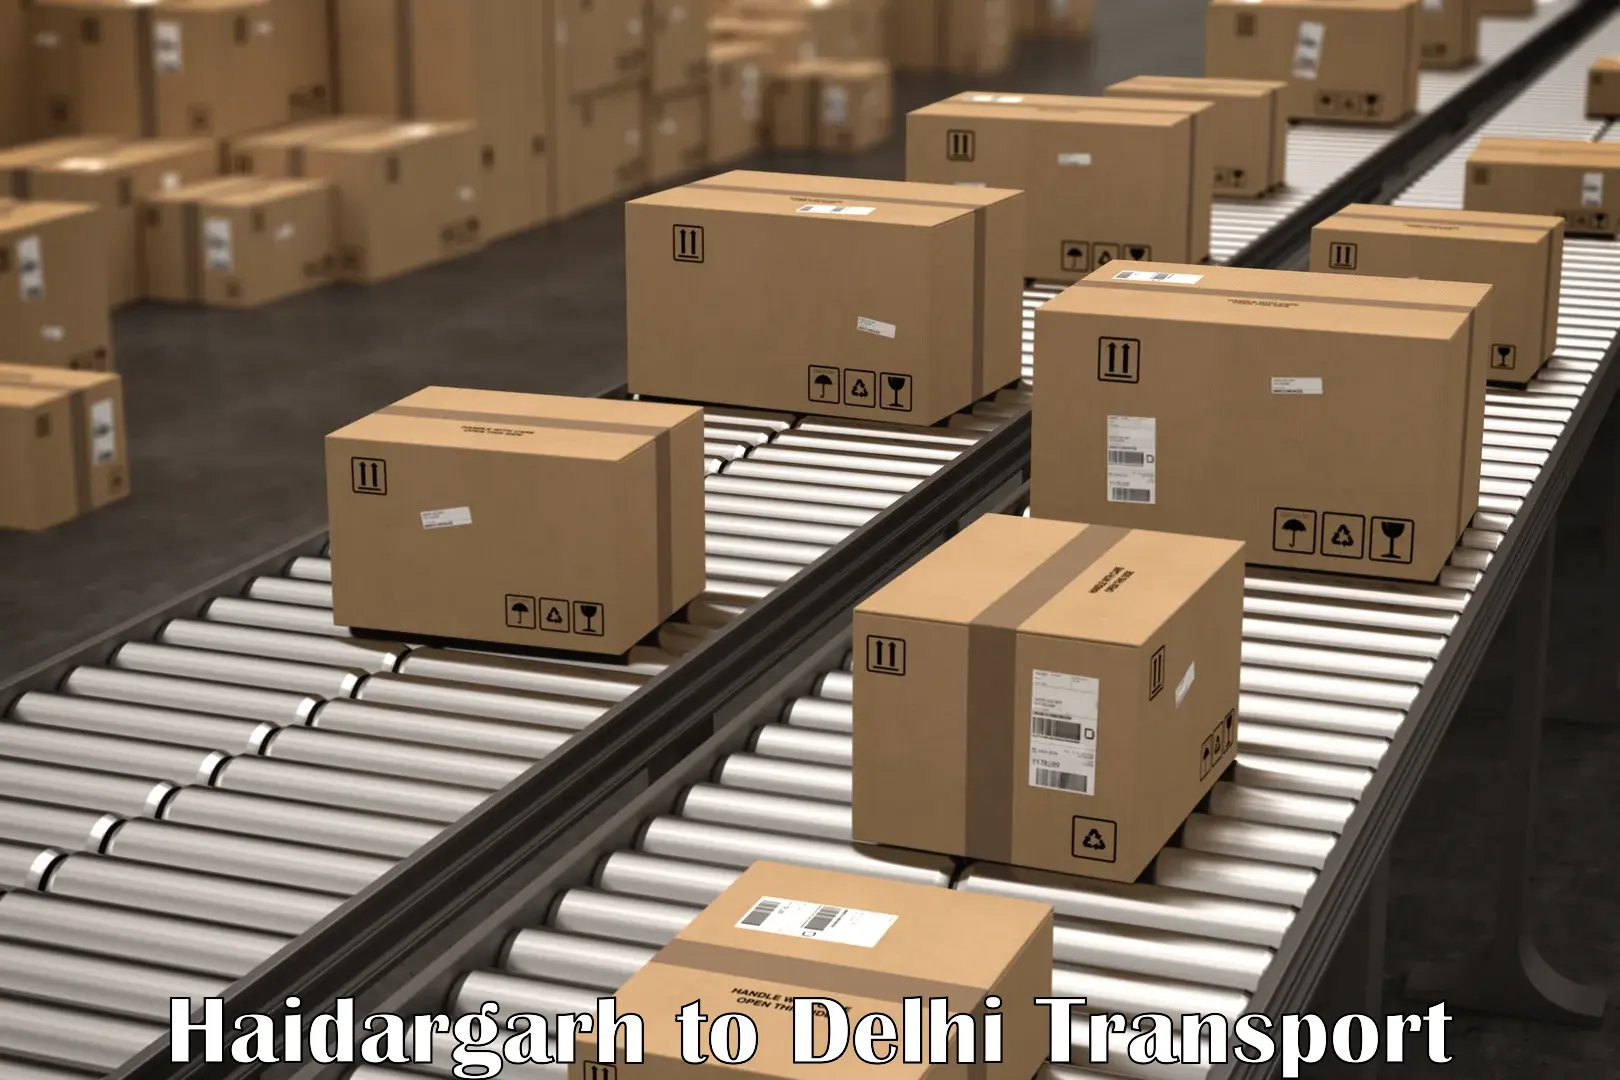 Shipping partner Haidargarh to East Delhi